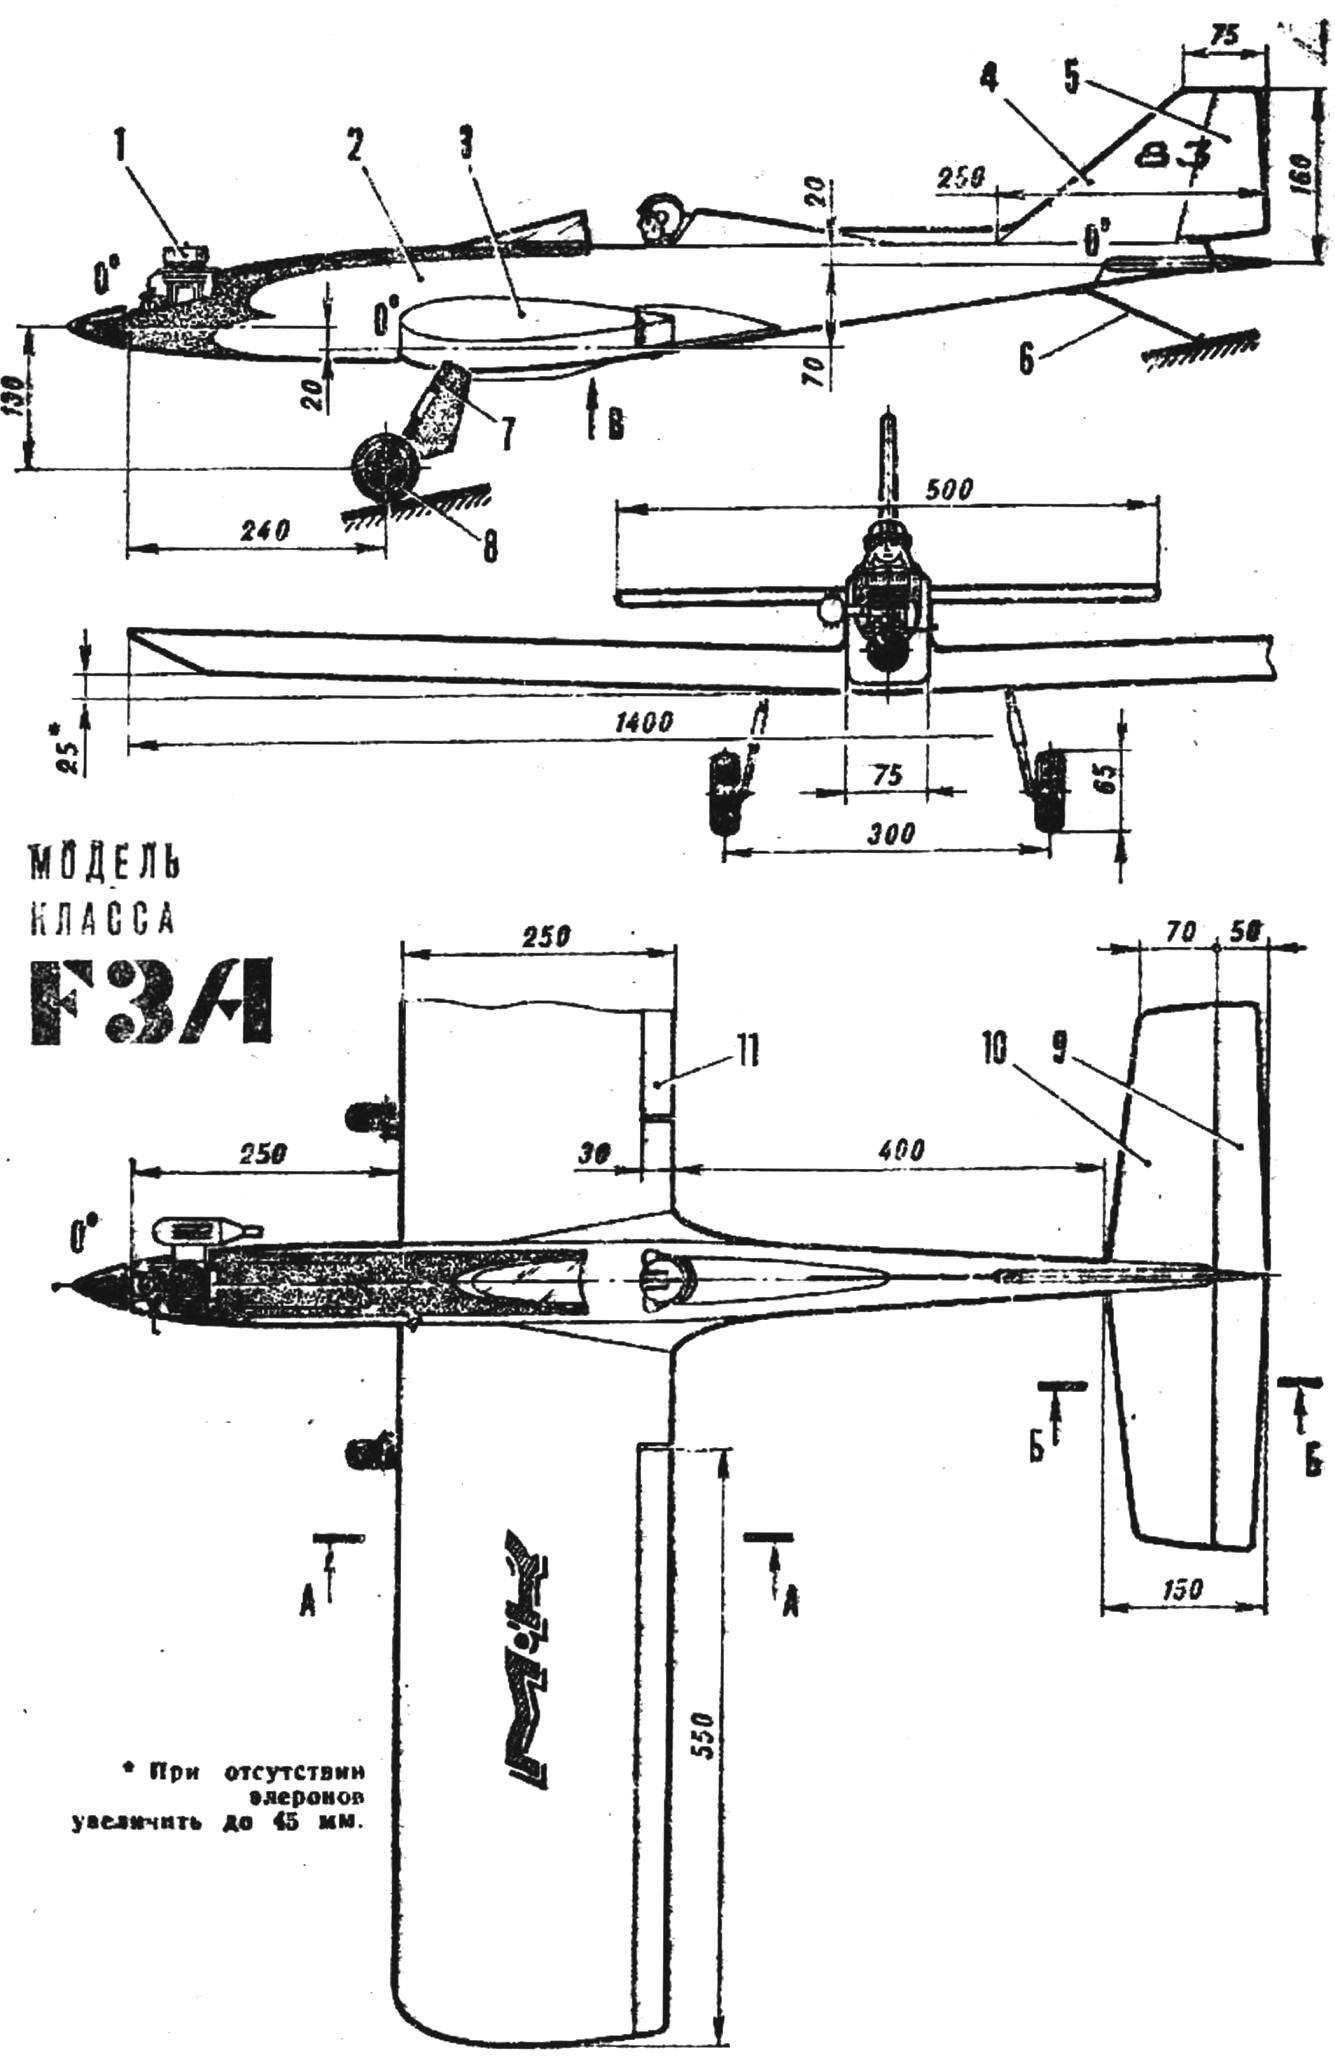 Рис. 1. Учебная радиоуправляемая пилотажная модель самолета